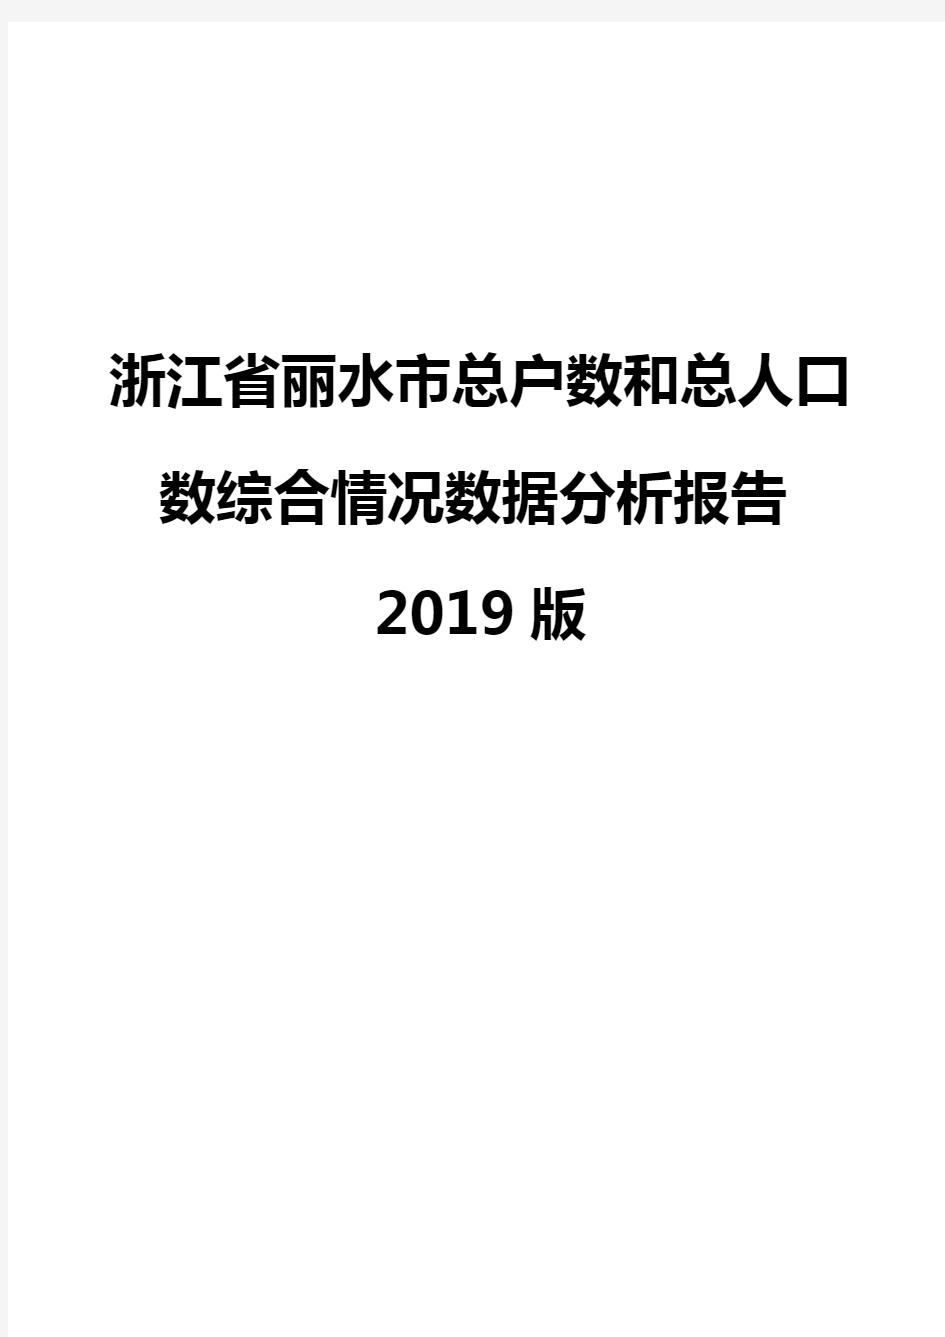 浙江省丽水市总户数和总人口数综合情况数据分析报告2019版